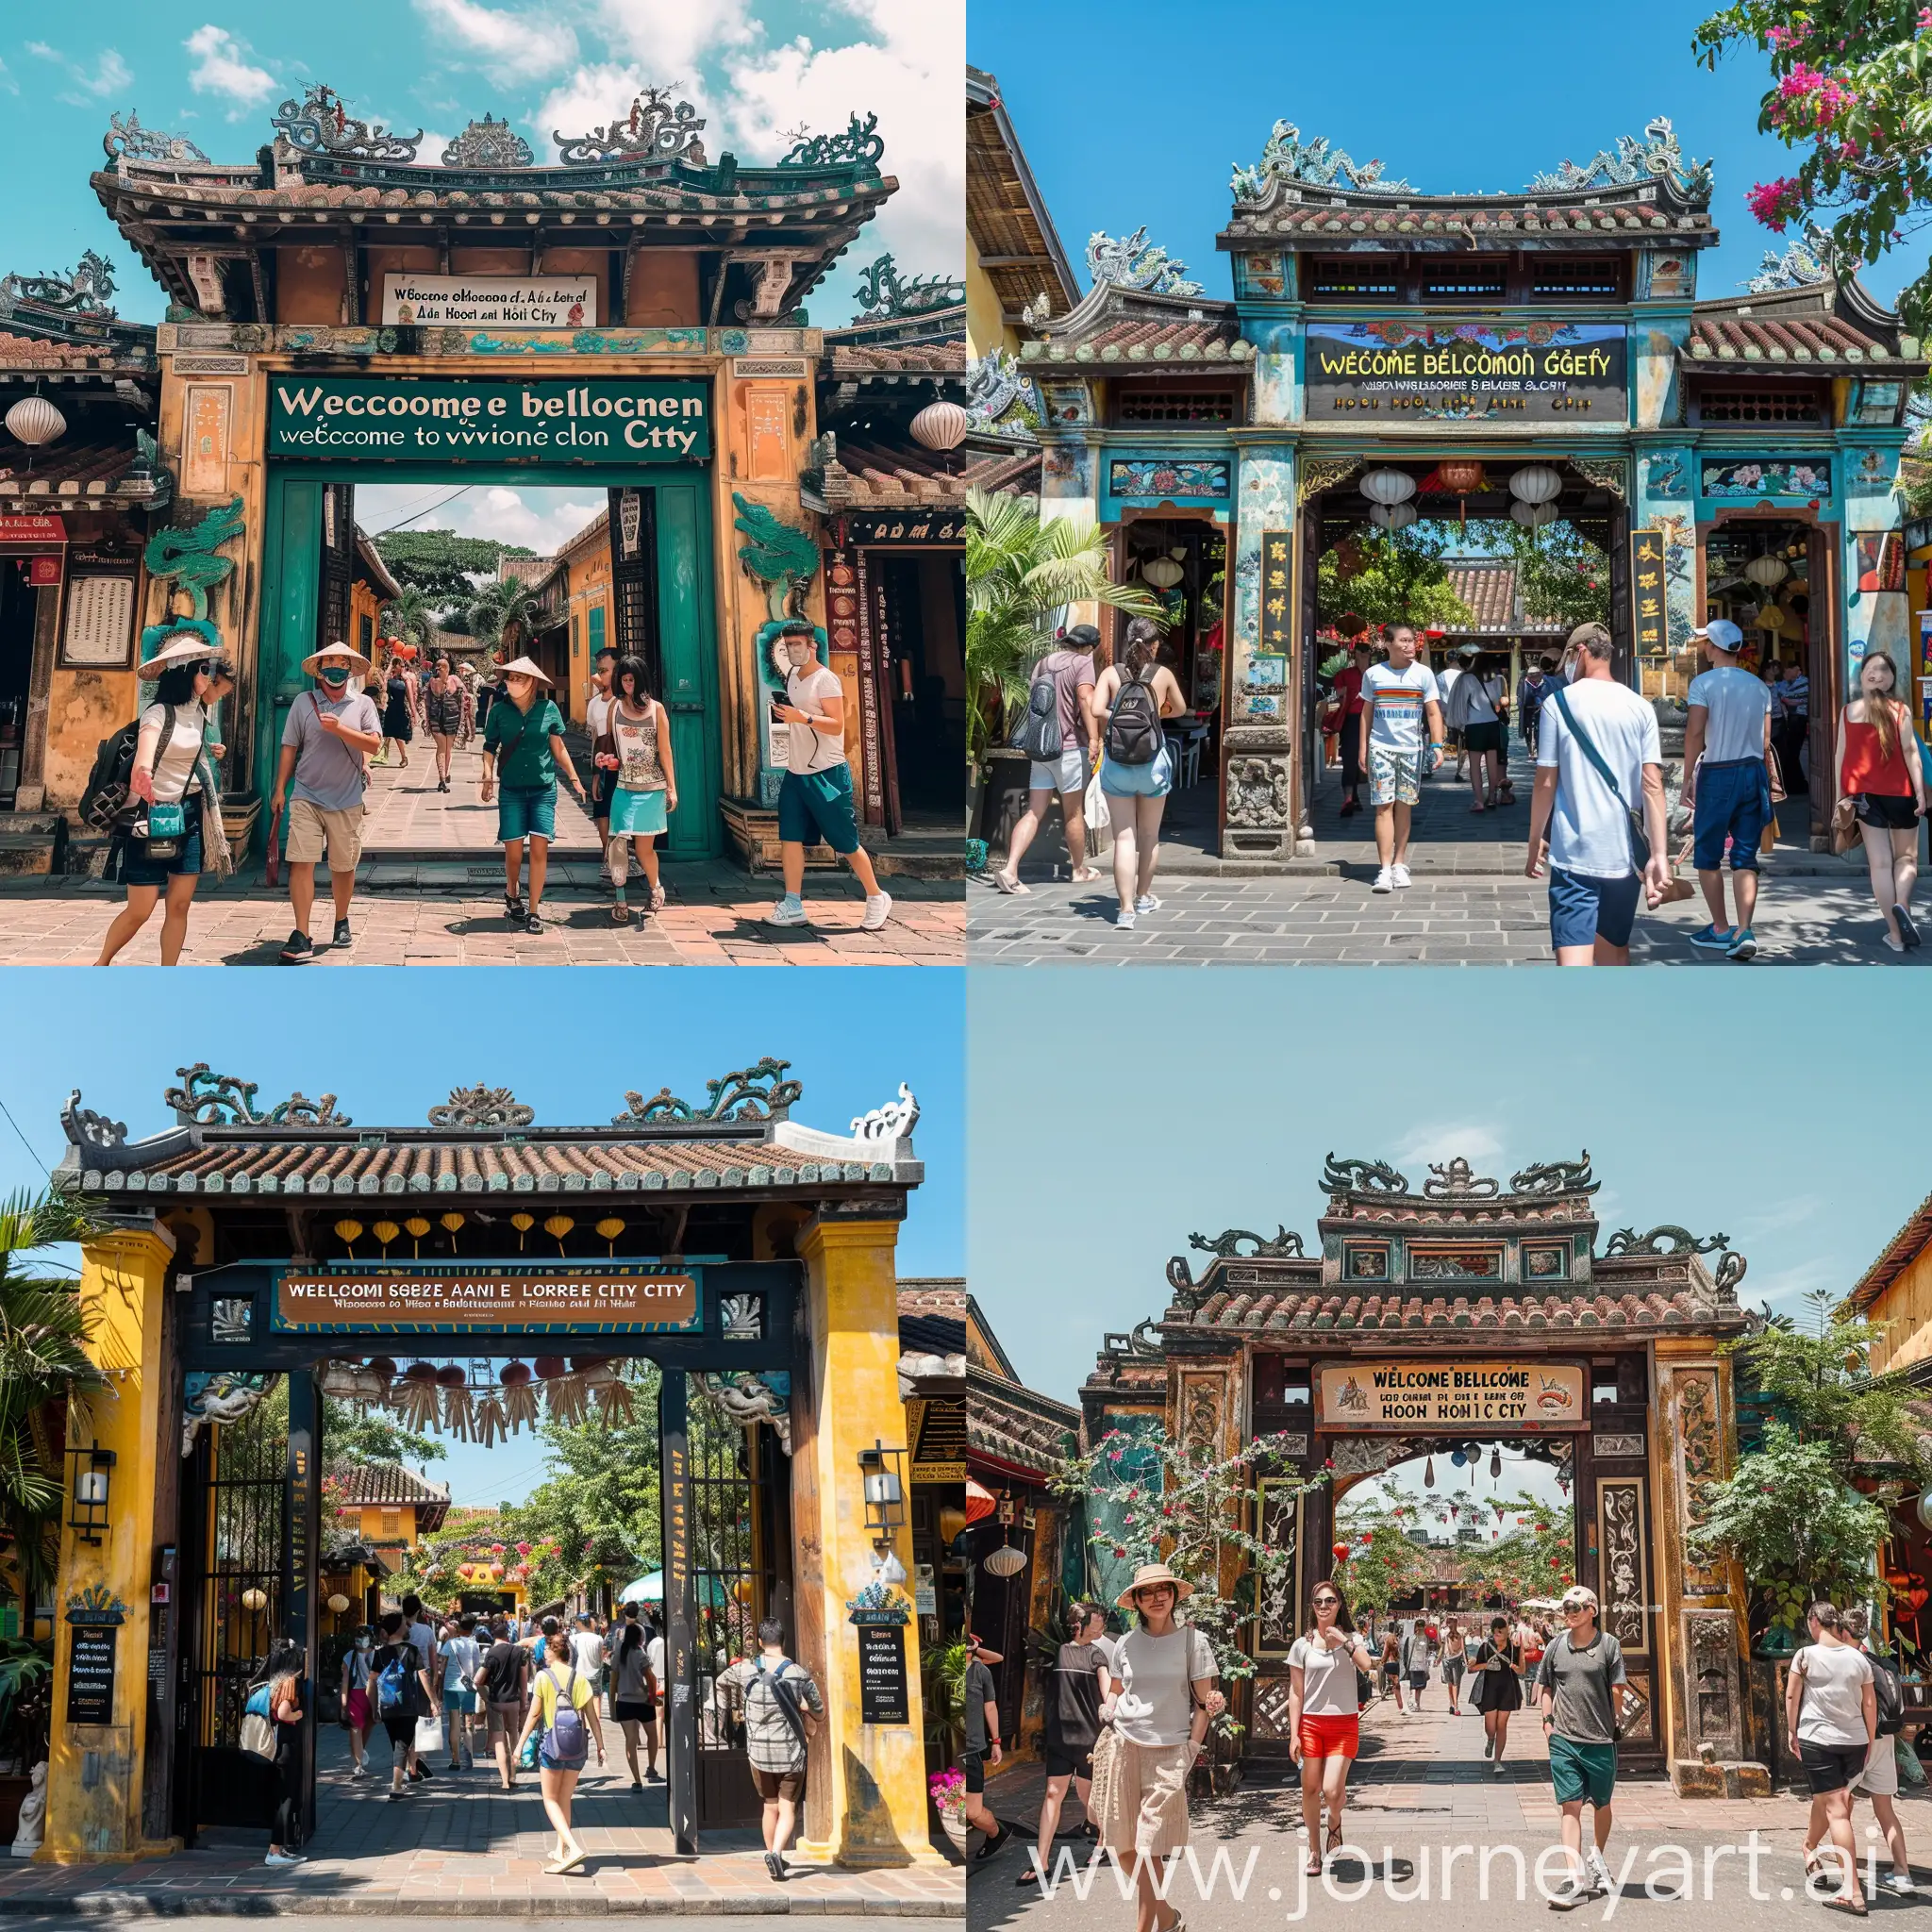 generate a picture of a gate in Hoi An old quarter with a sign that says 'Chào mừng tỷ phú Cổng cùng tình nhân đến chơi TP Hội An' with tourists walking around